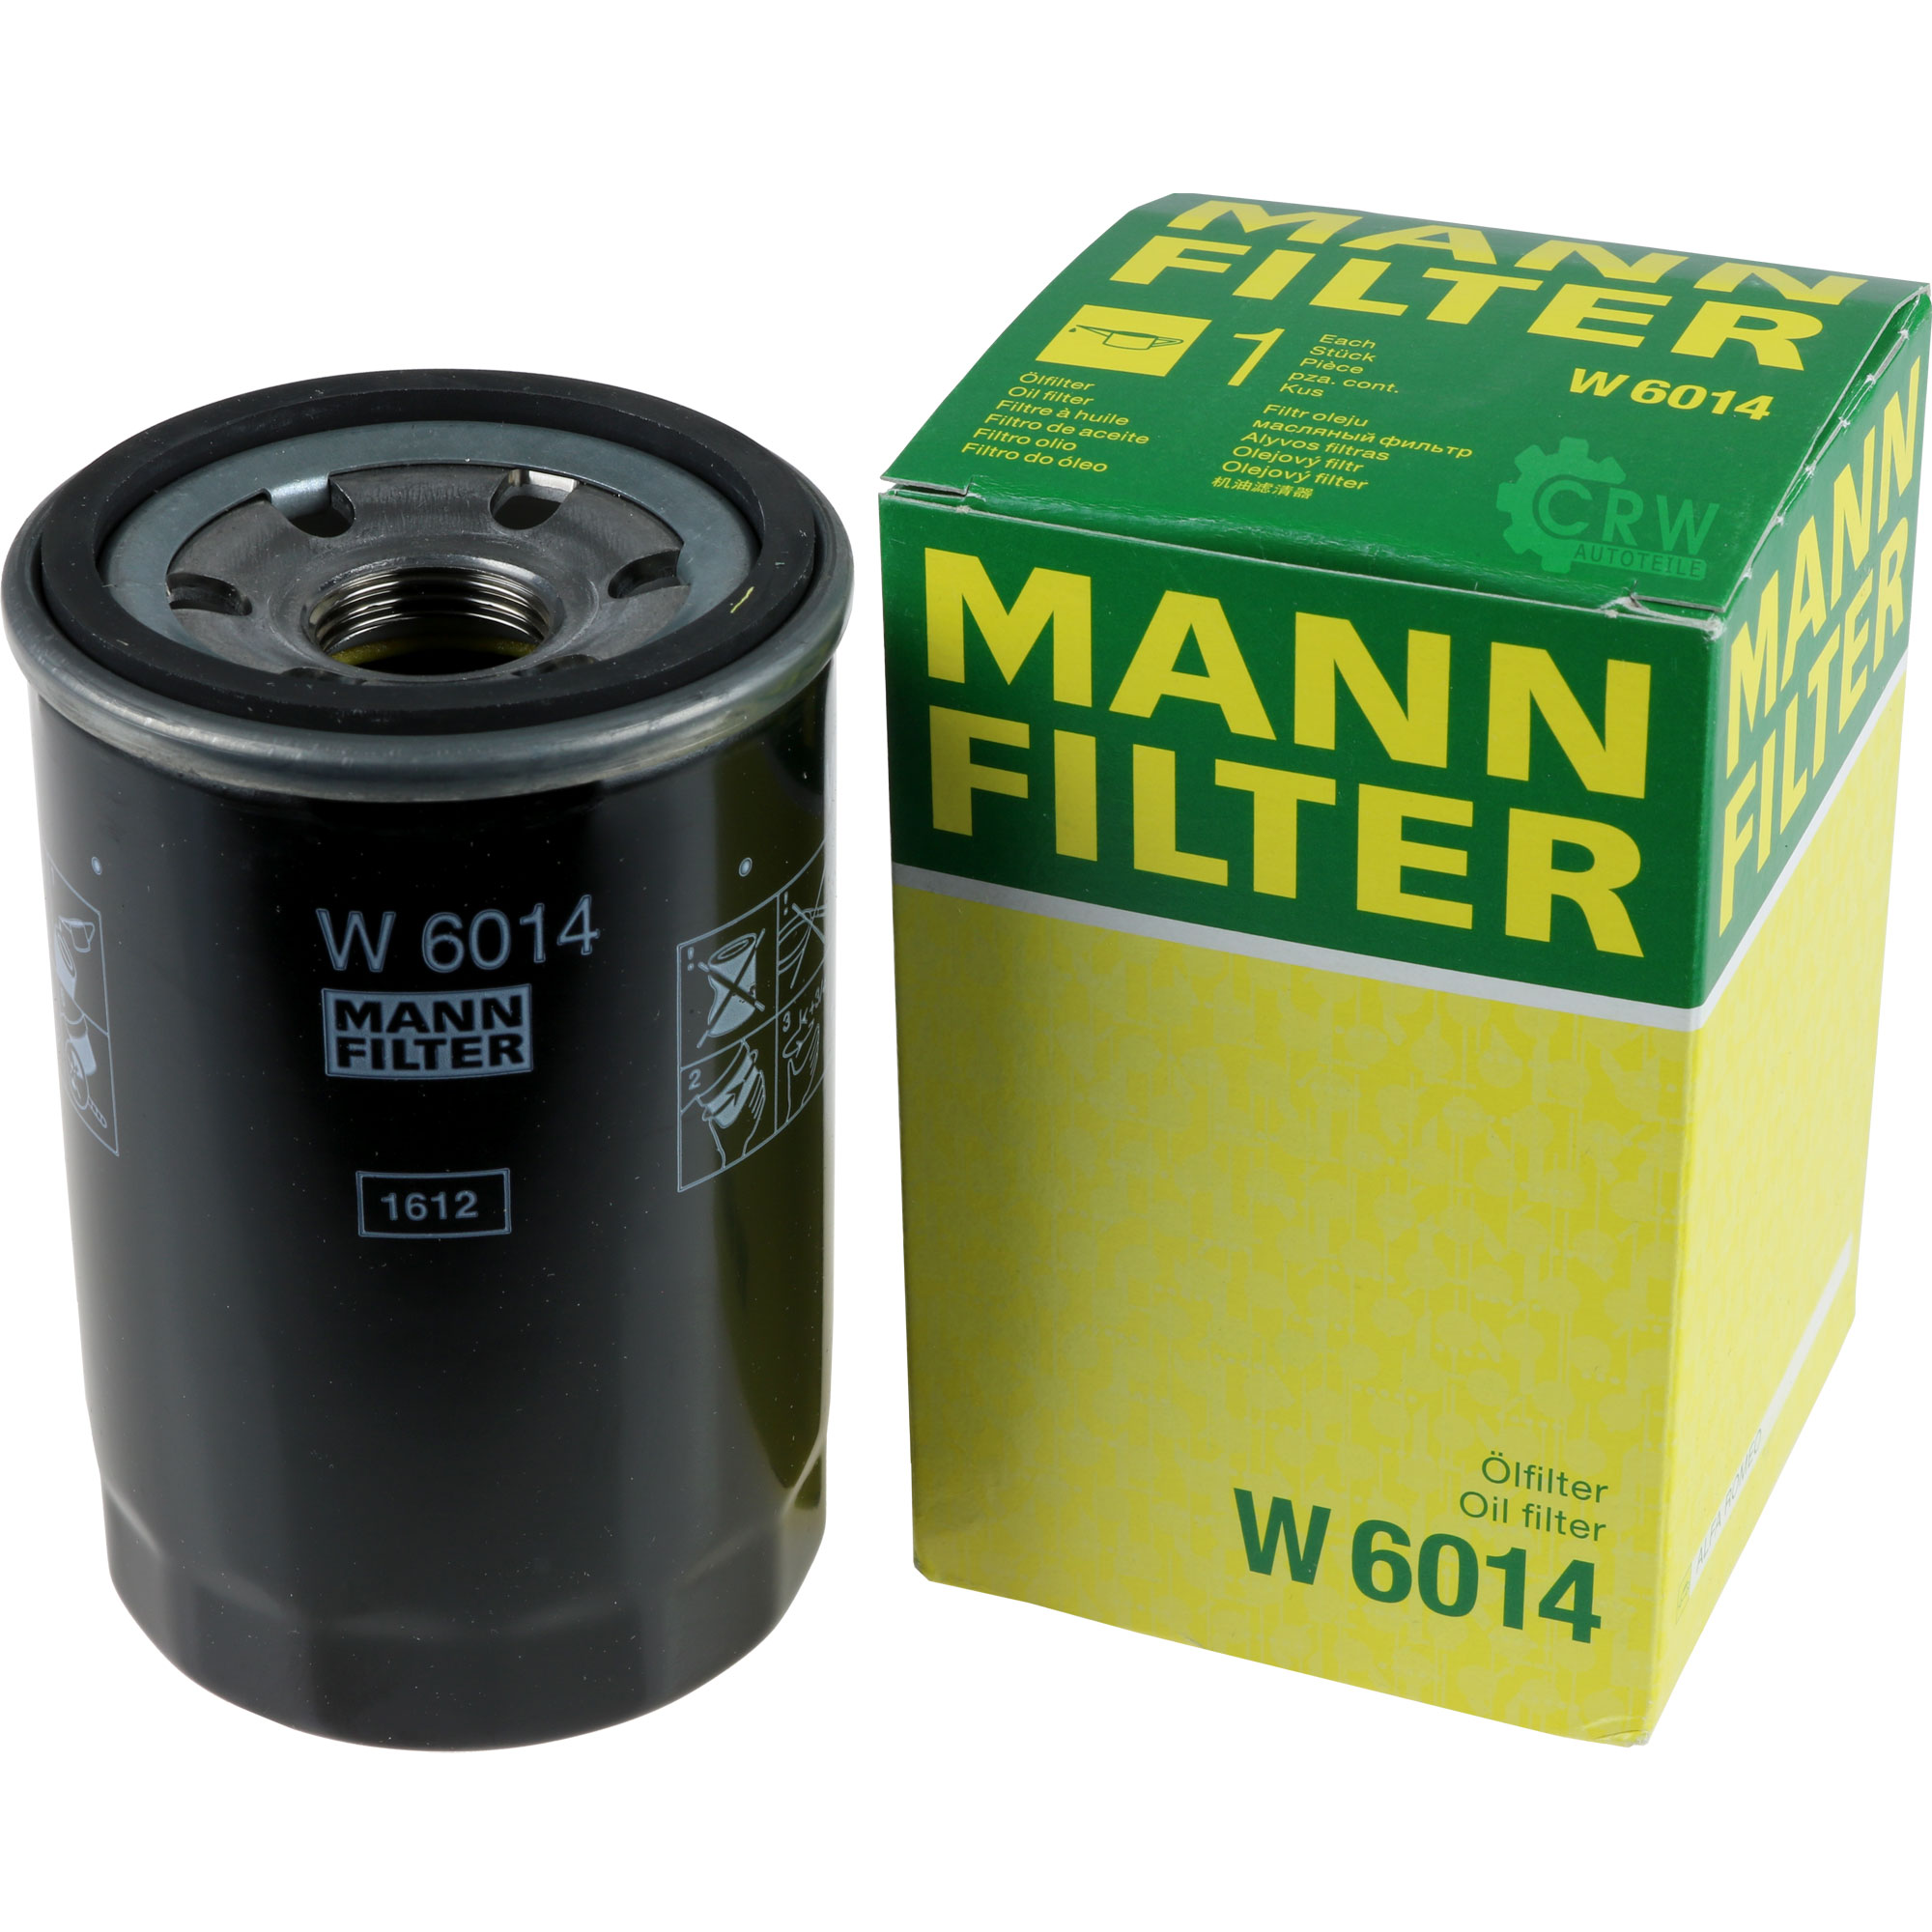 MANN-FILTER Ölfilter W 6014 Oil Filter